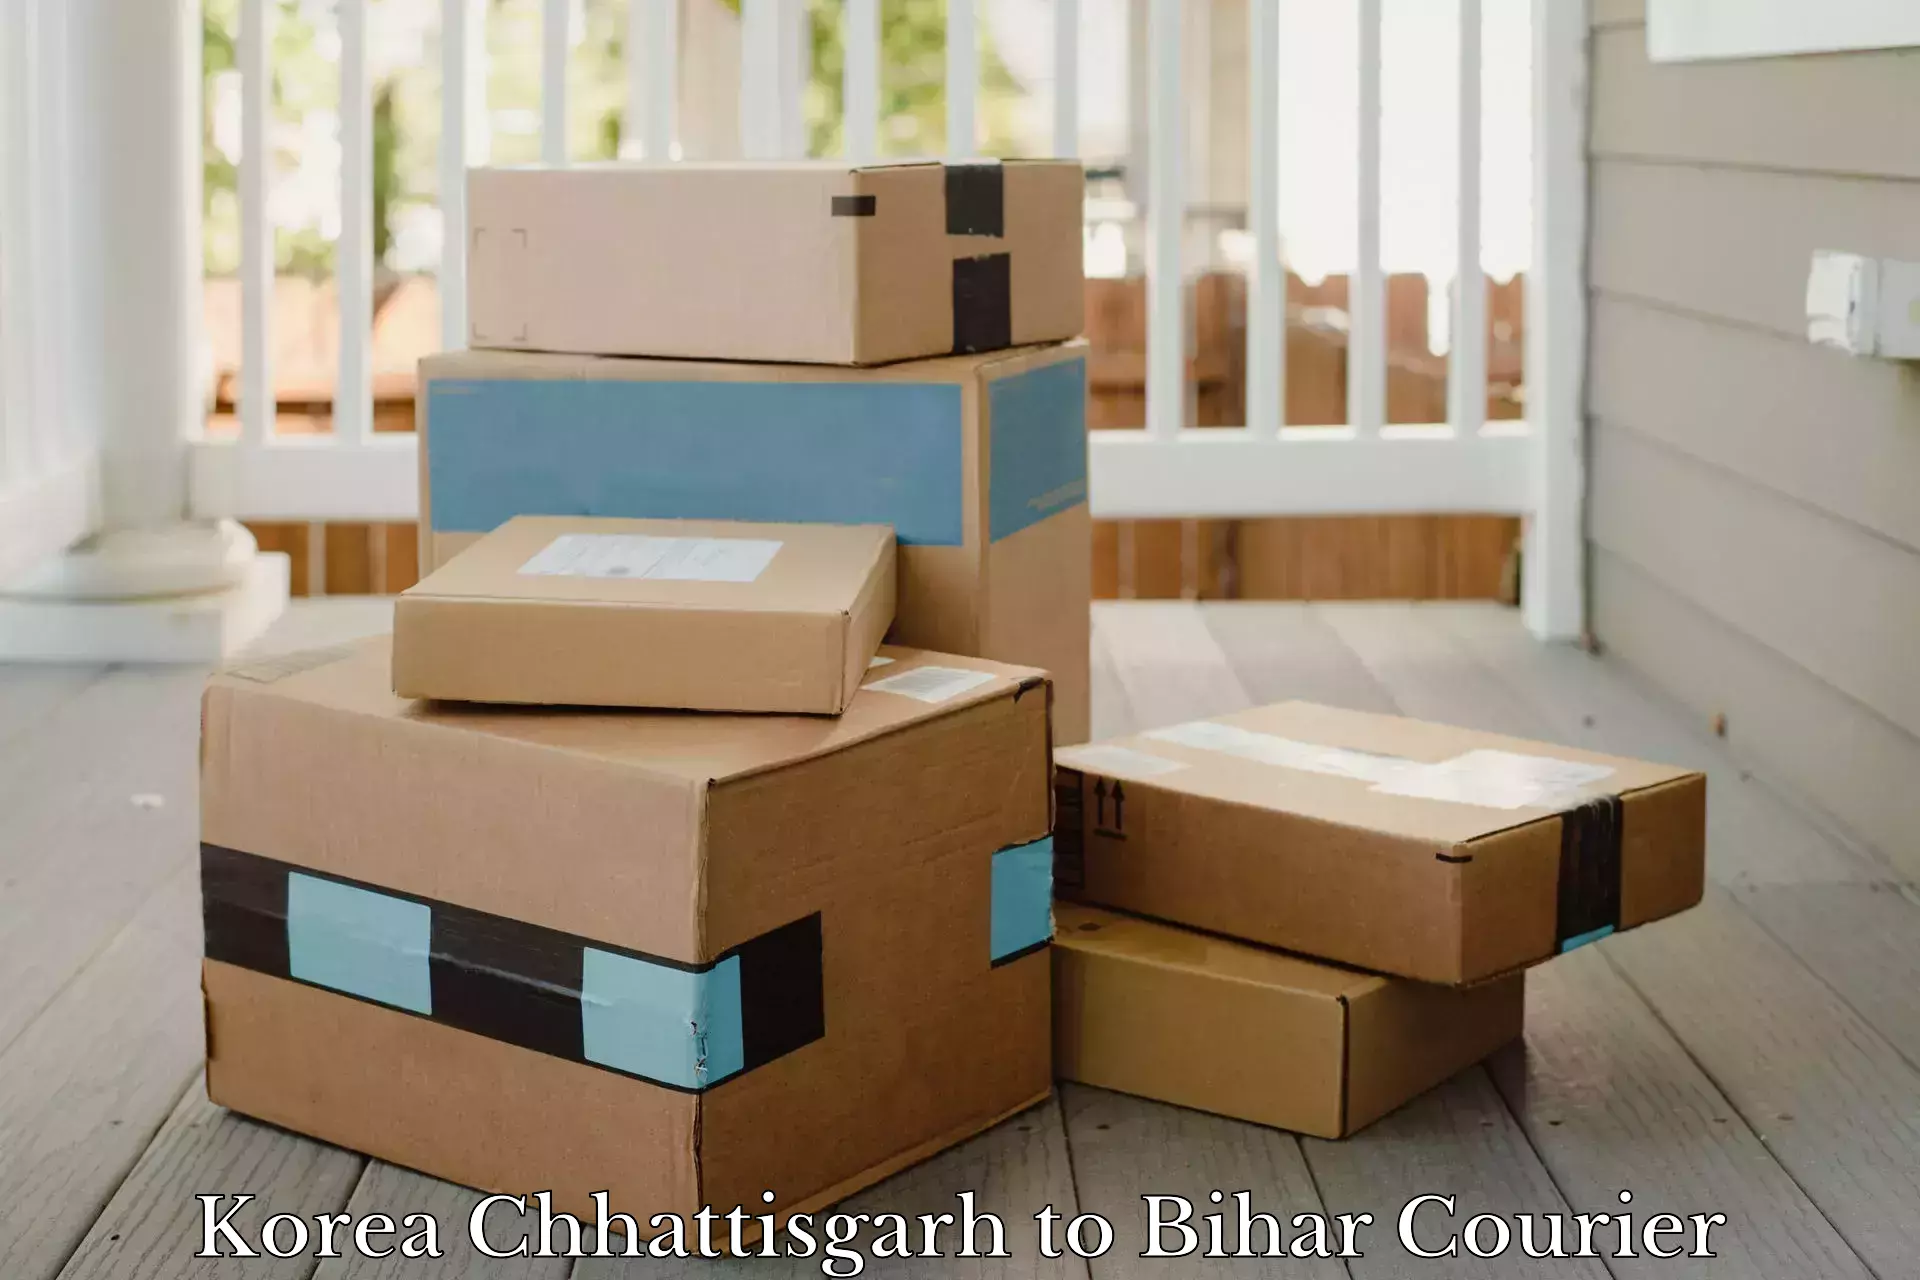 On-demand delivery in Korea Chhattisgarh to Bihar